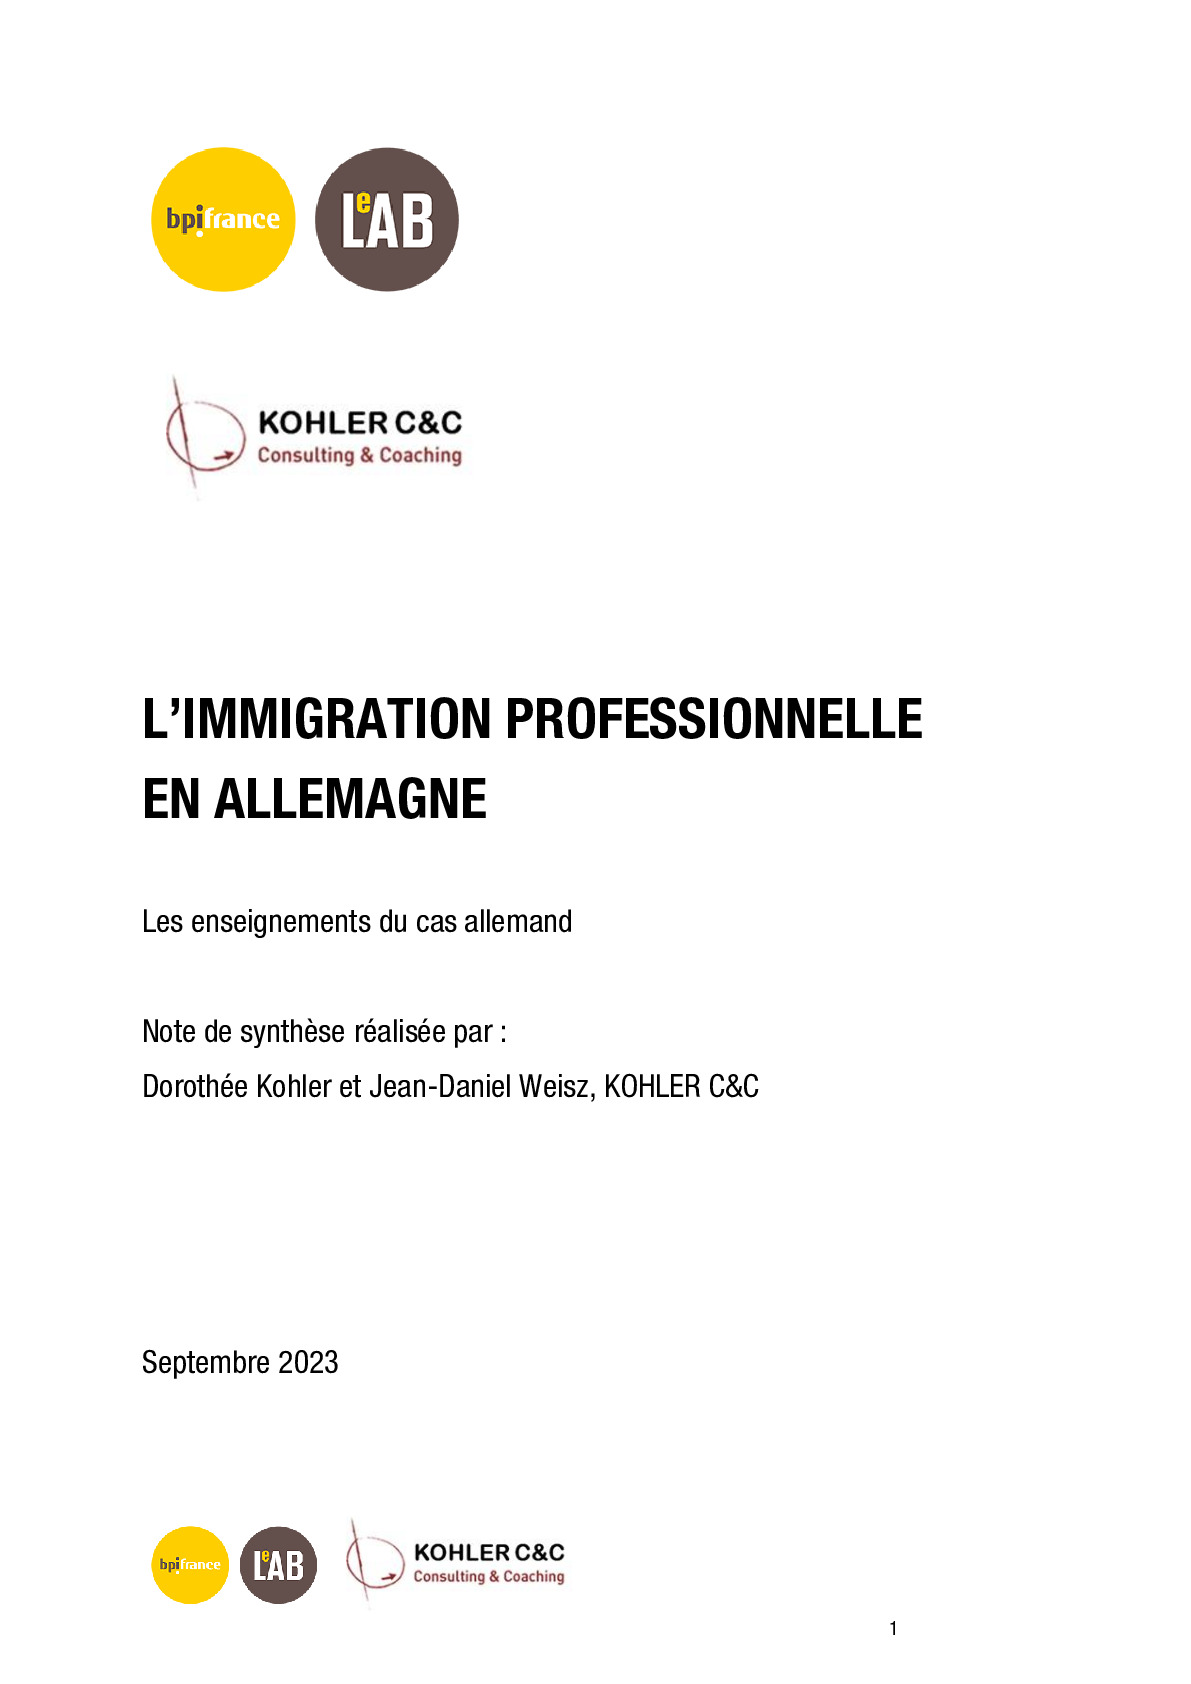 2023-09-15 – Immigration professionnelle en Allemagne – Kohler Consulting  Coaching et Bpifrance Le Lab-pdf